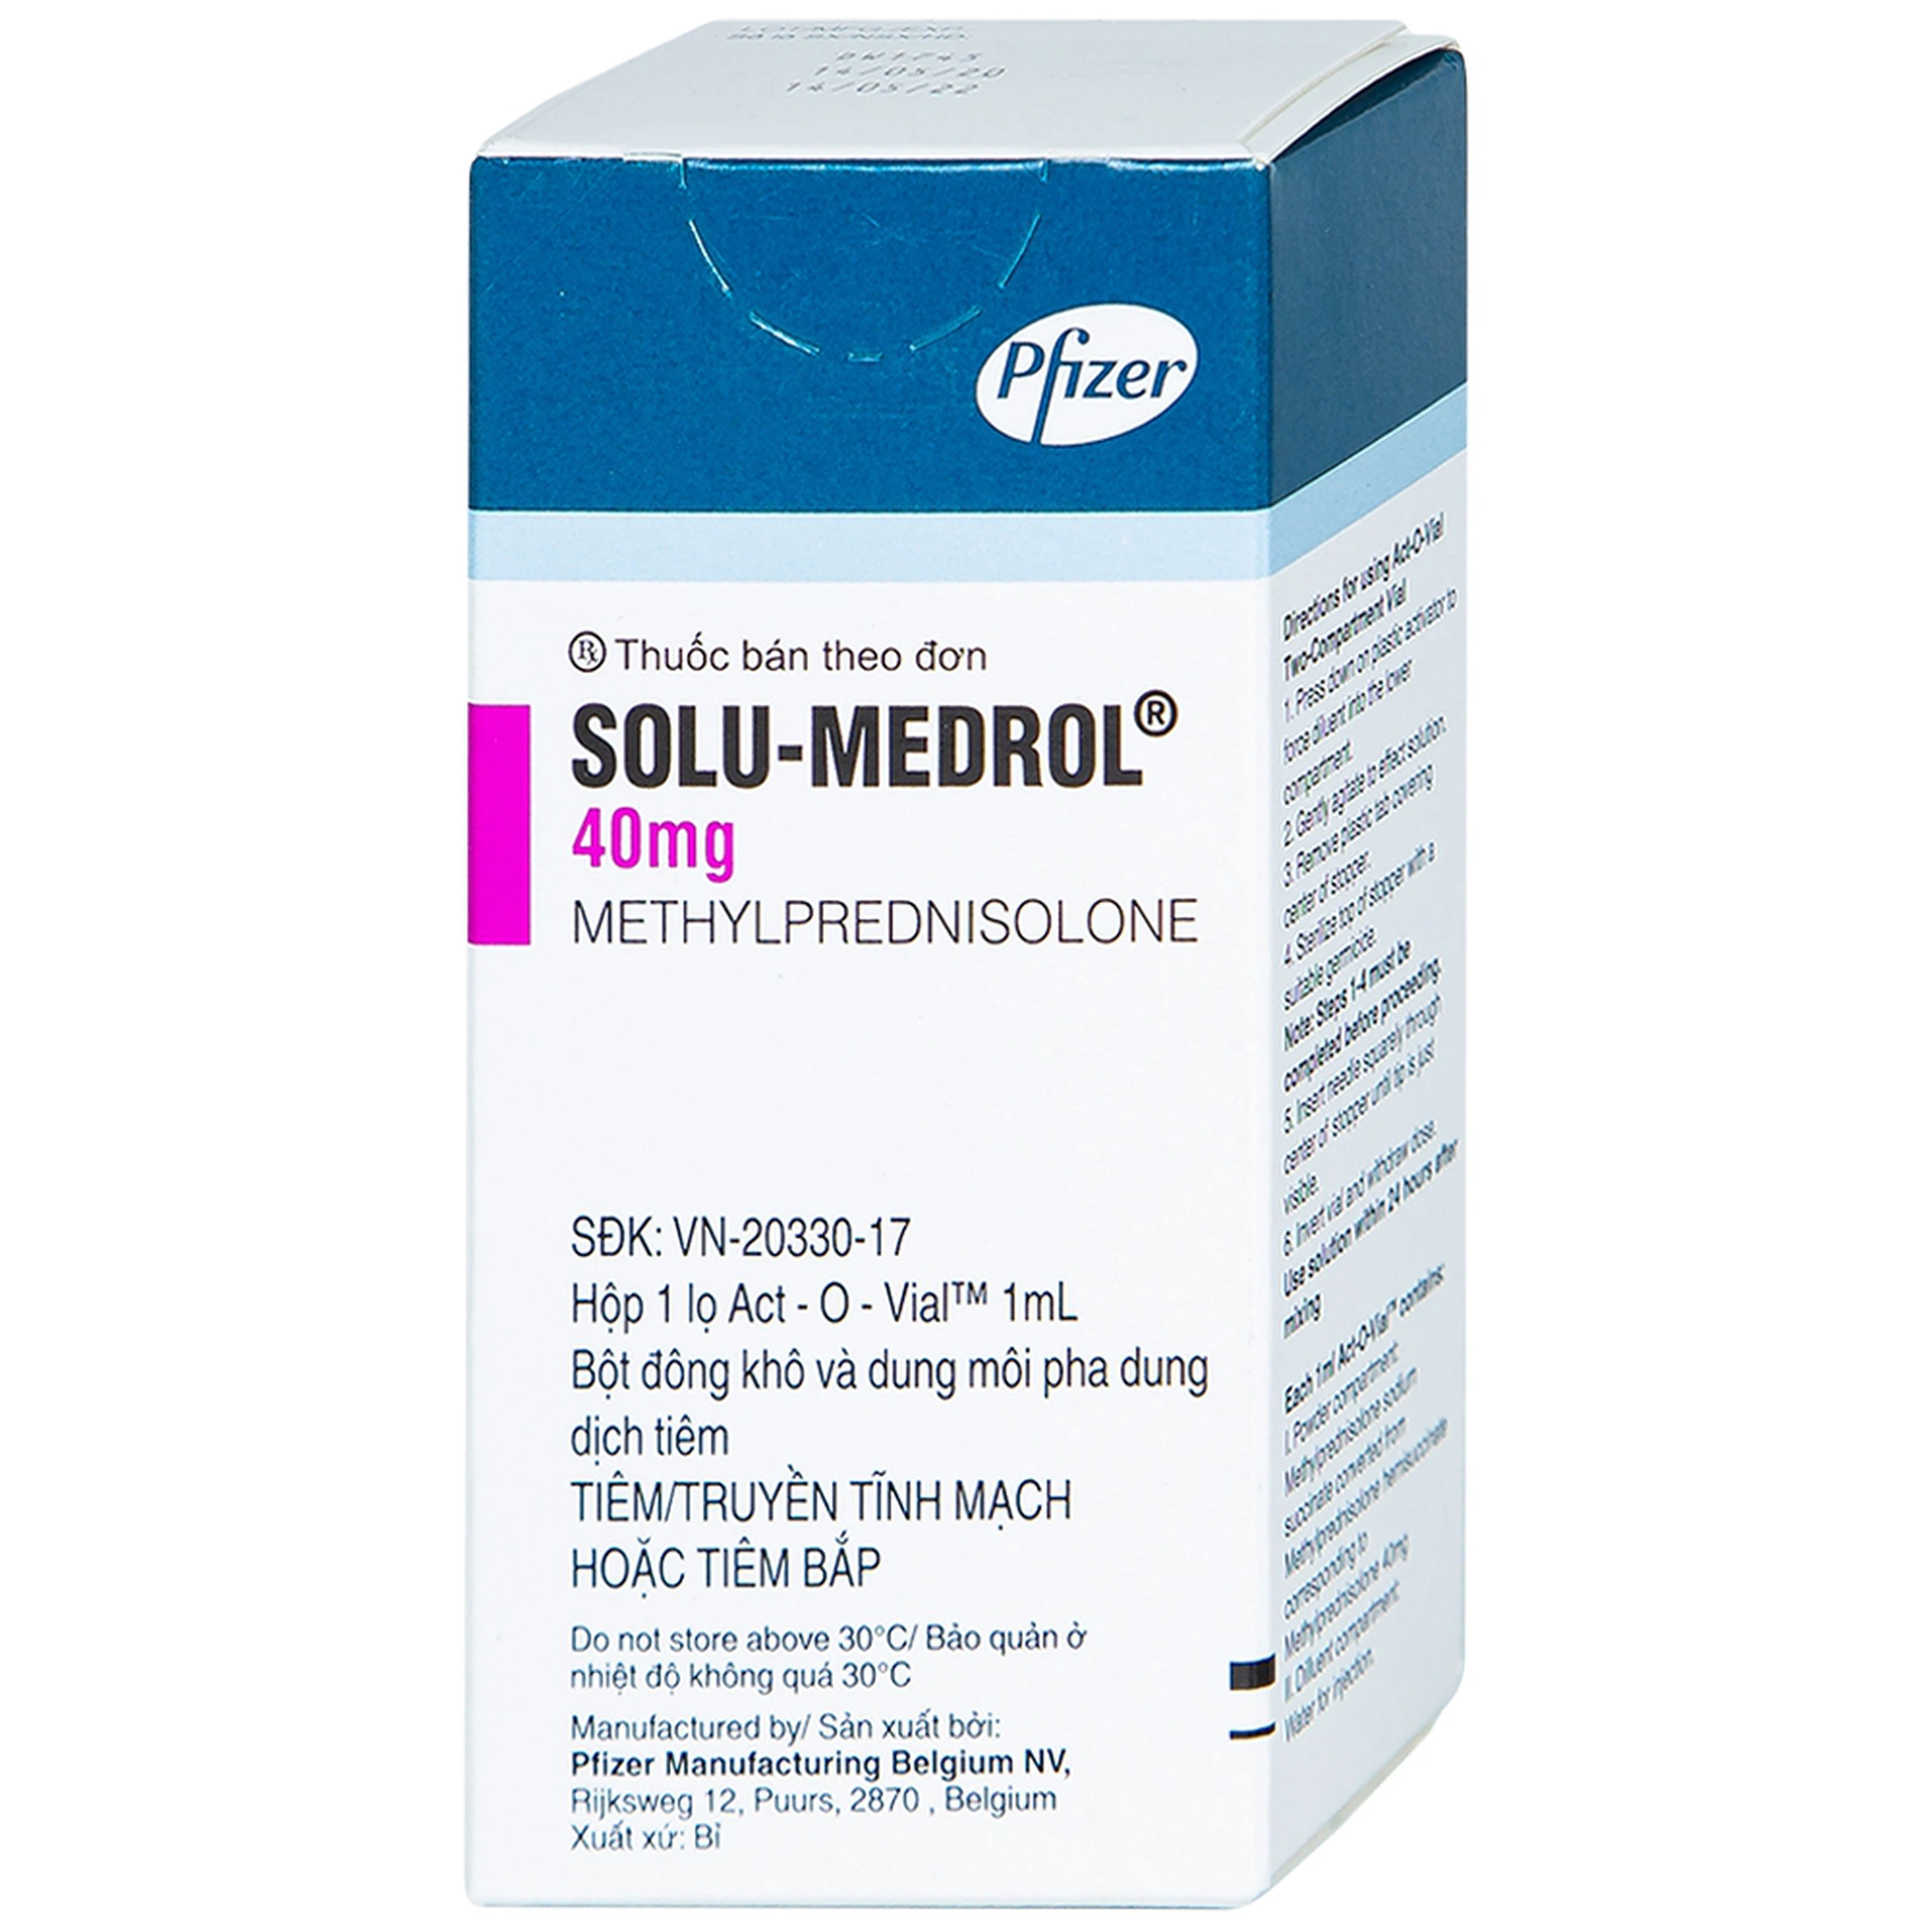 Bột pha tiêm Solu-Medrol 40mg Pfizer điều trị rối loạn thấp khớp, lupus ban đỏ hệ thống (1 lọ x 1ml)